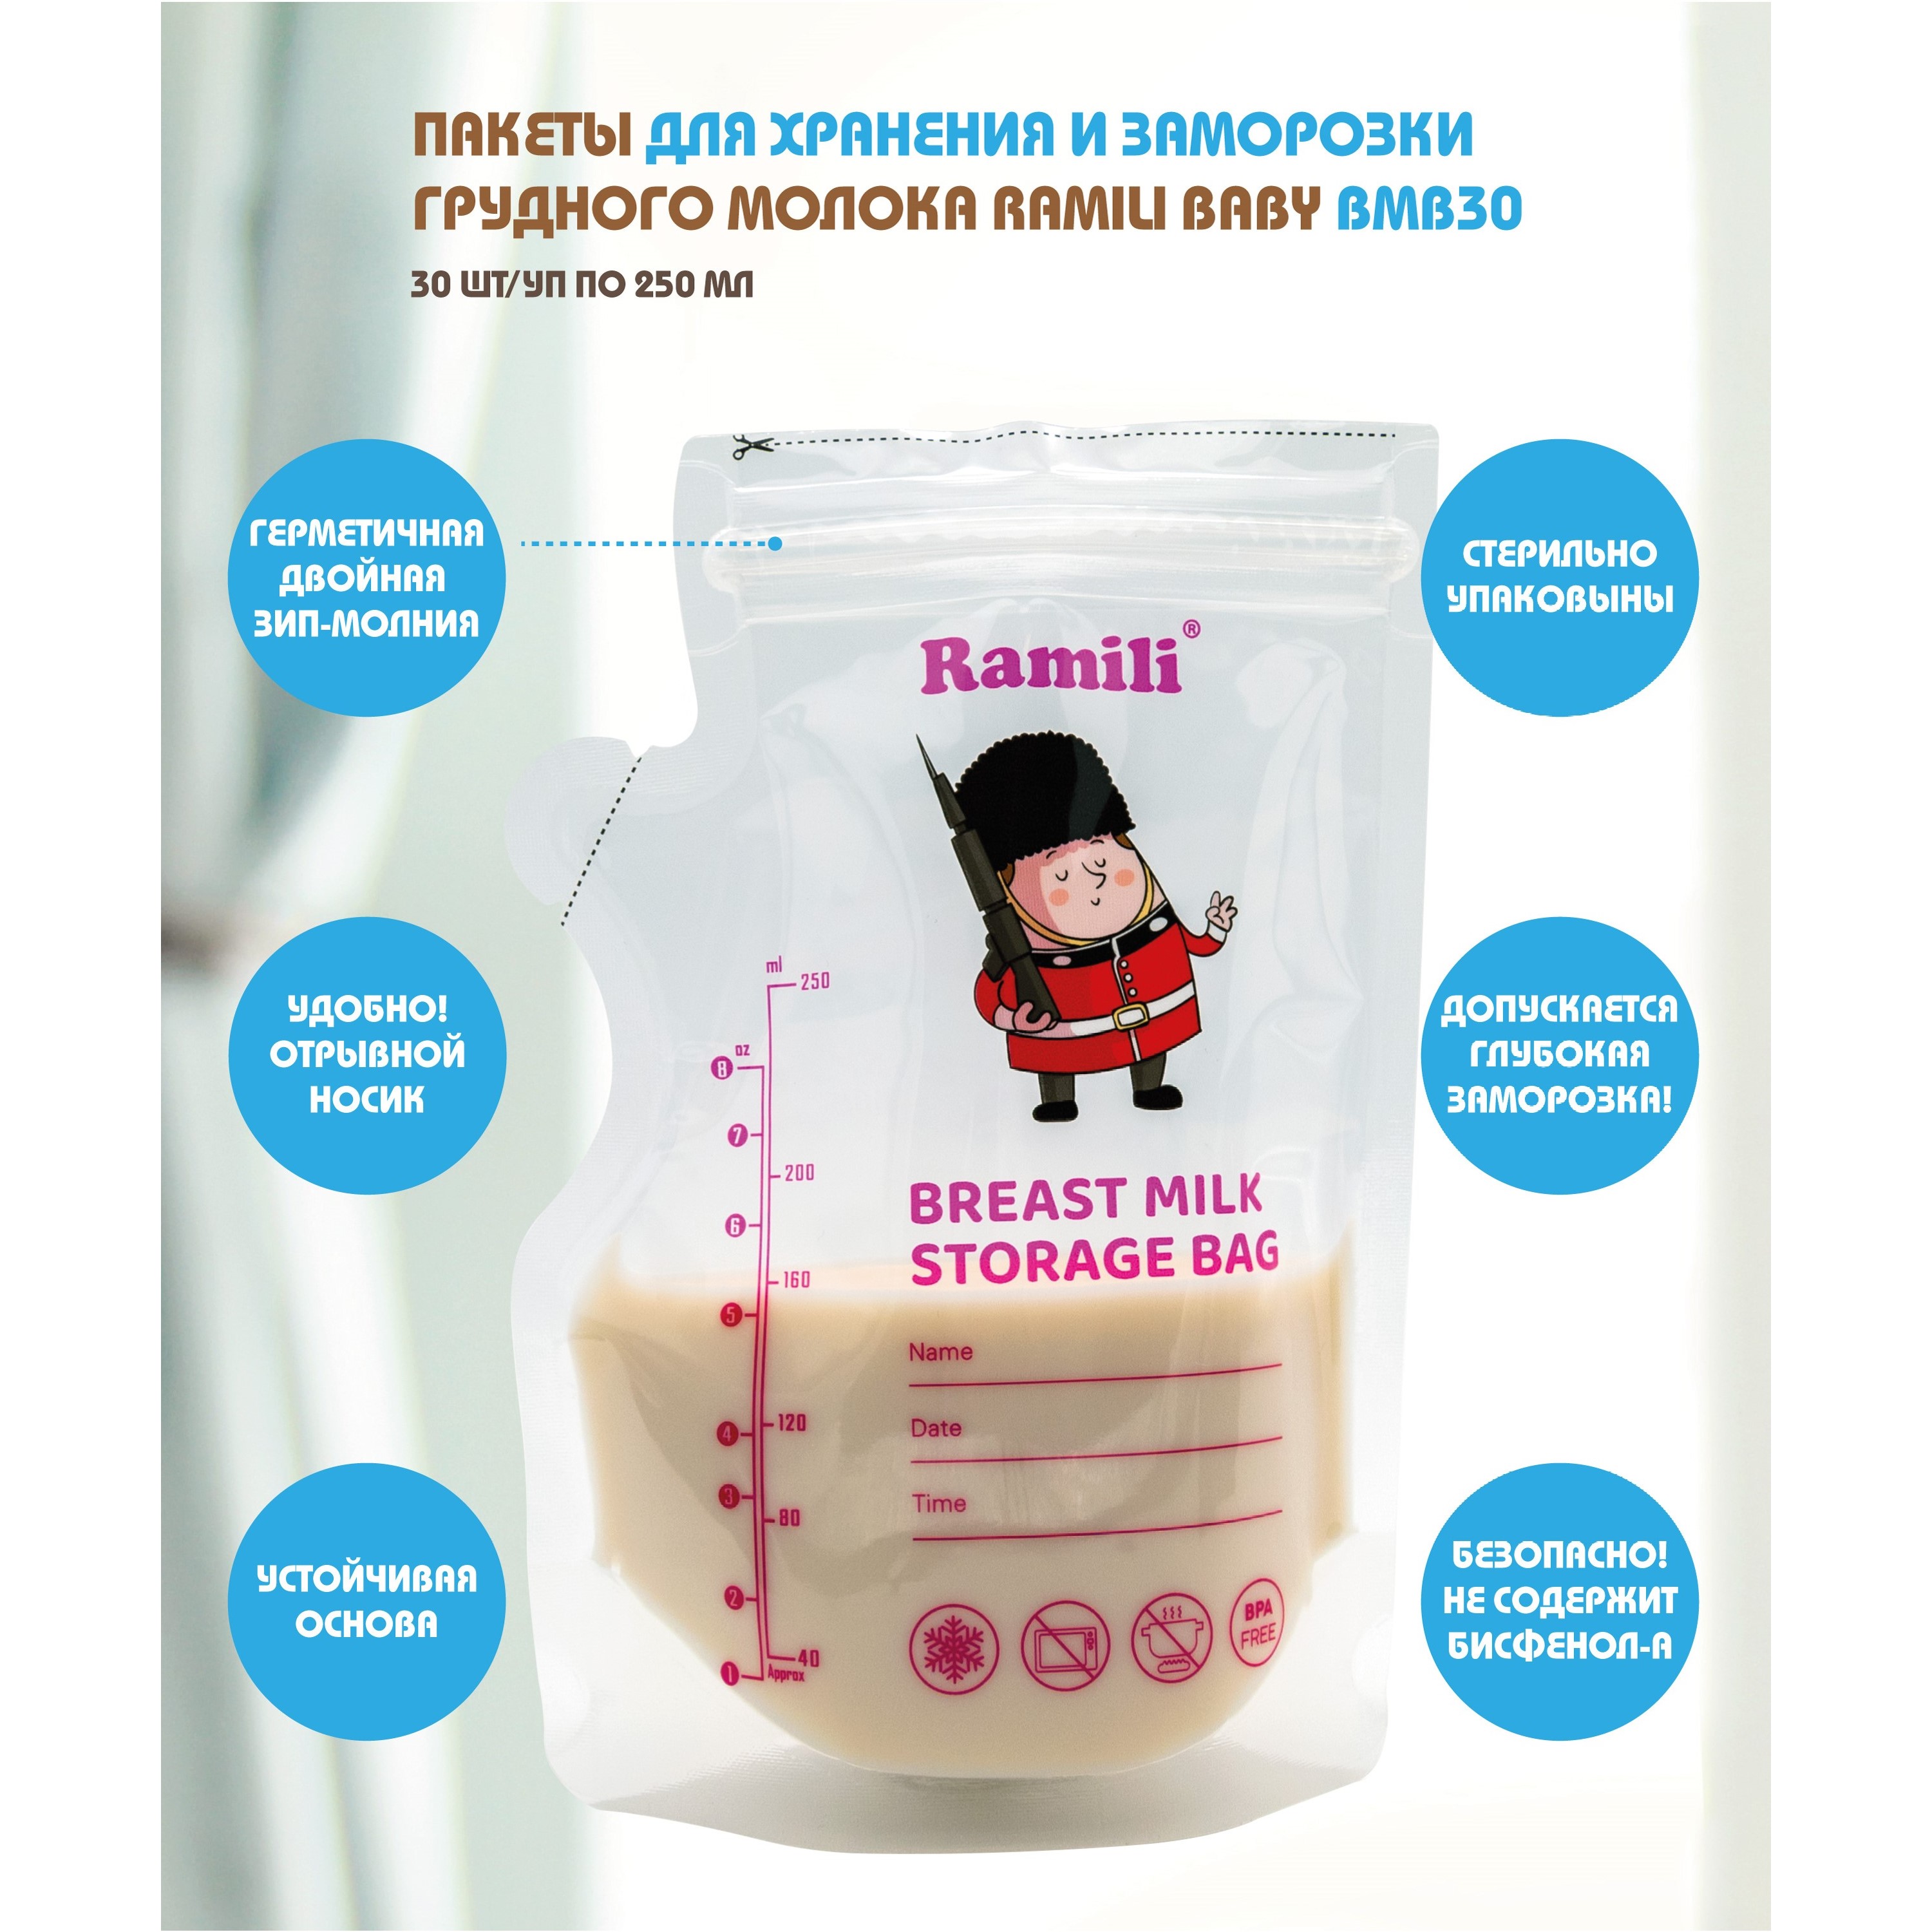 Пакеты для хранения и заморозки грудного молока Ramili Baby BMB30 dr brown s пакеты для хранения грудного молока 180 мл 25 шт